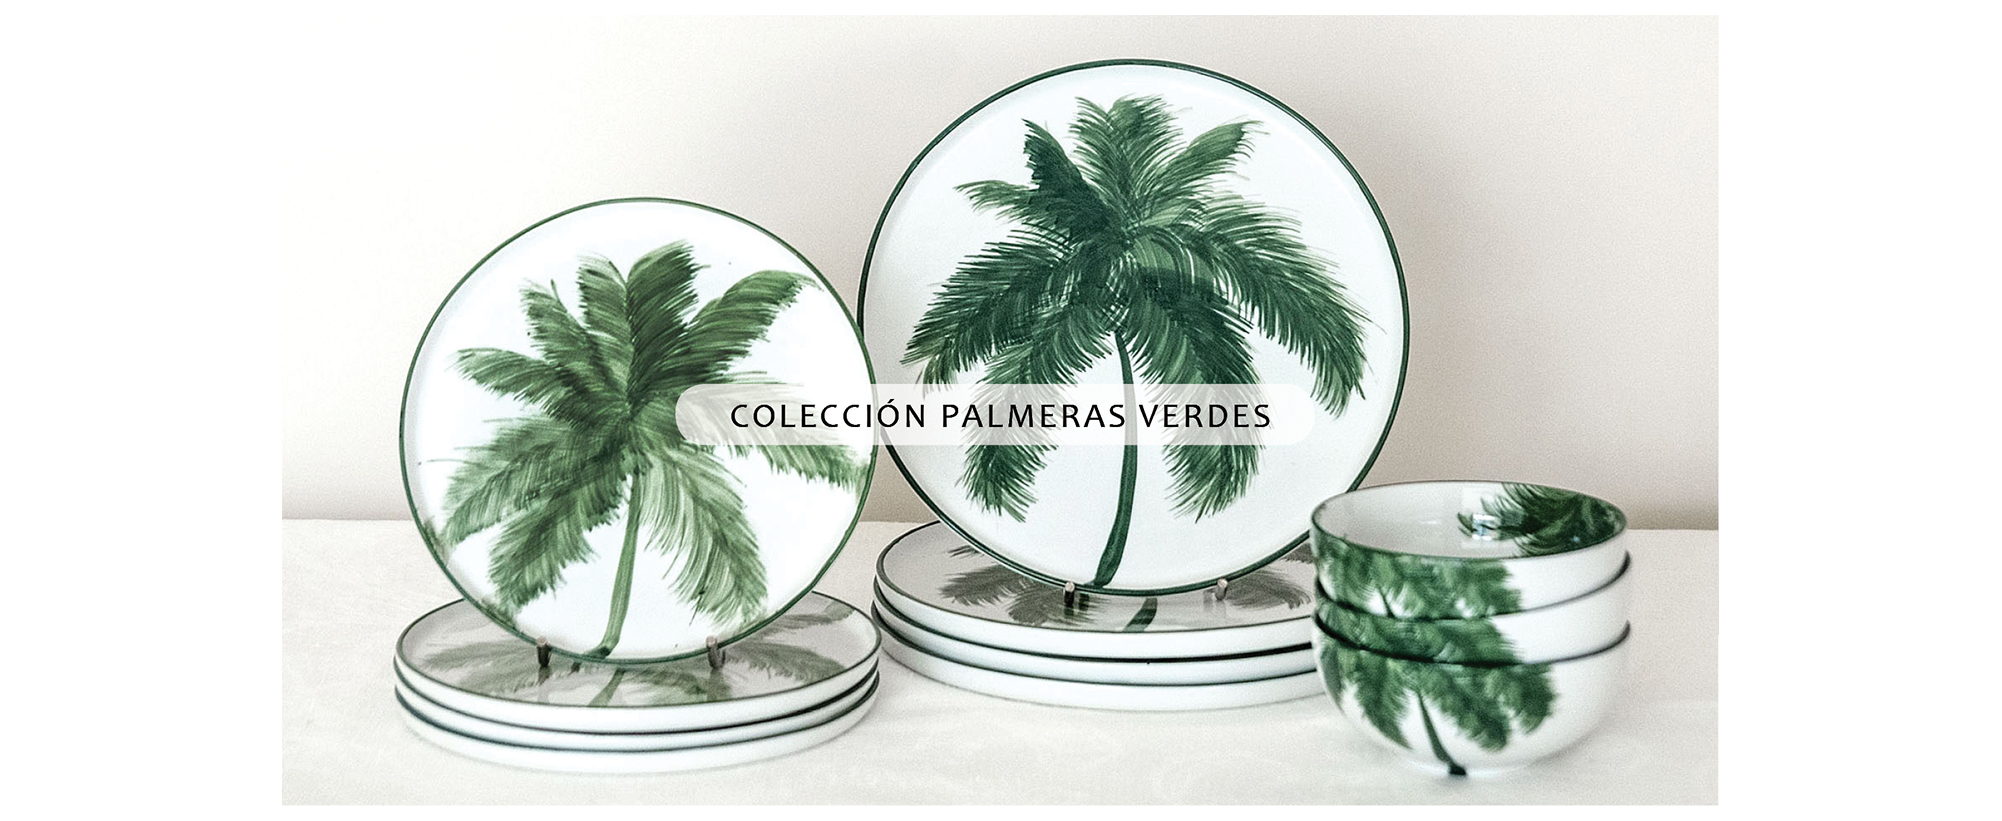 Colección Palmeras Verdes.jpg